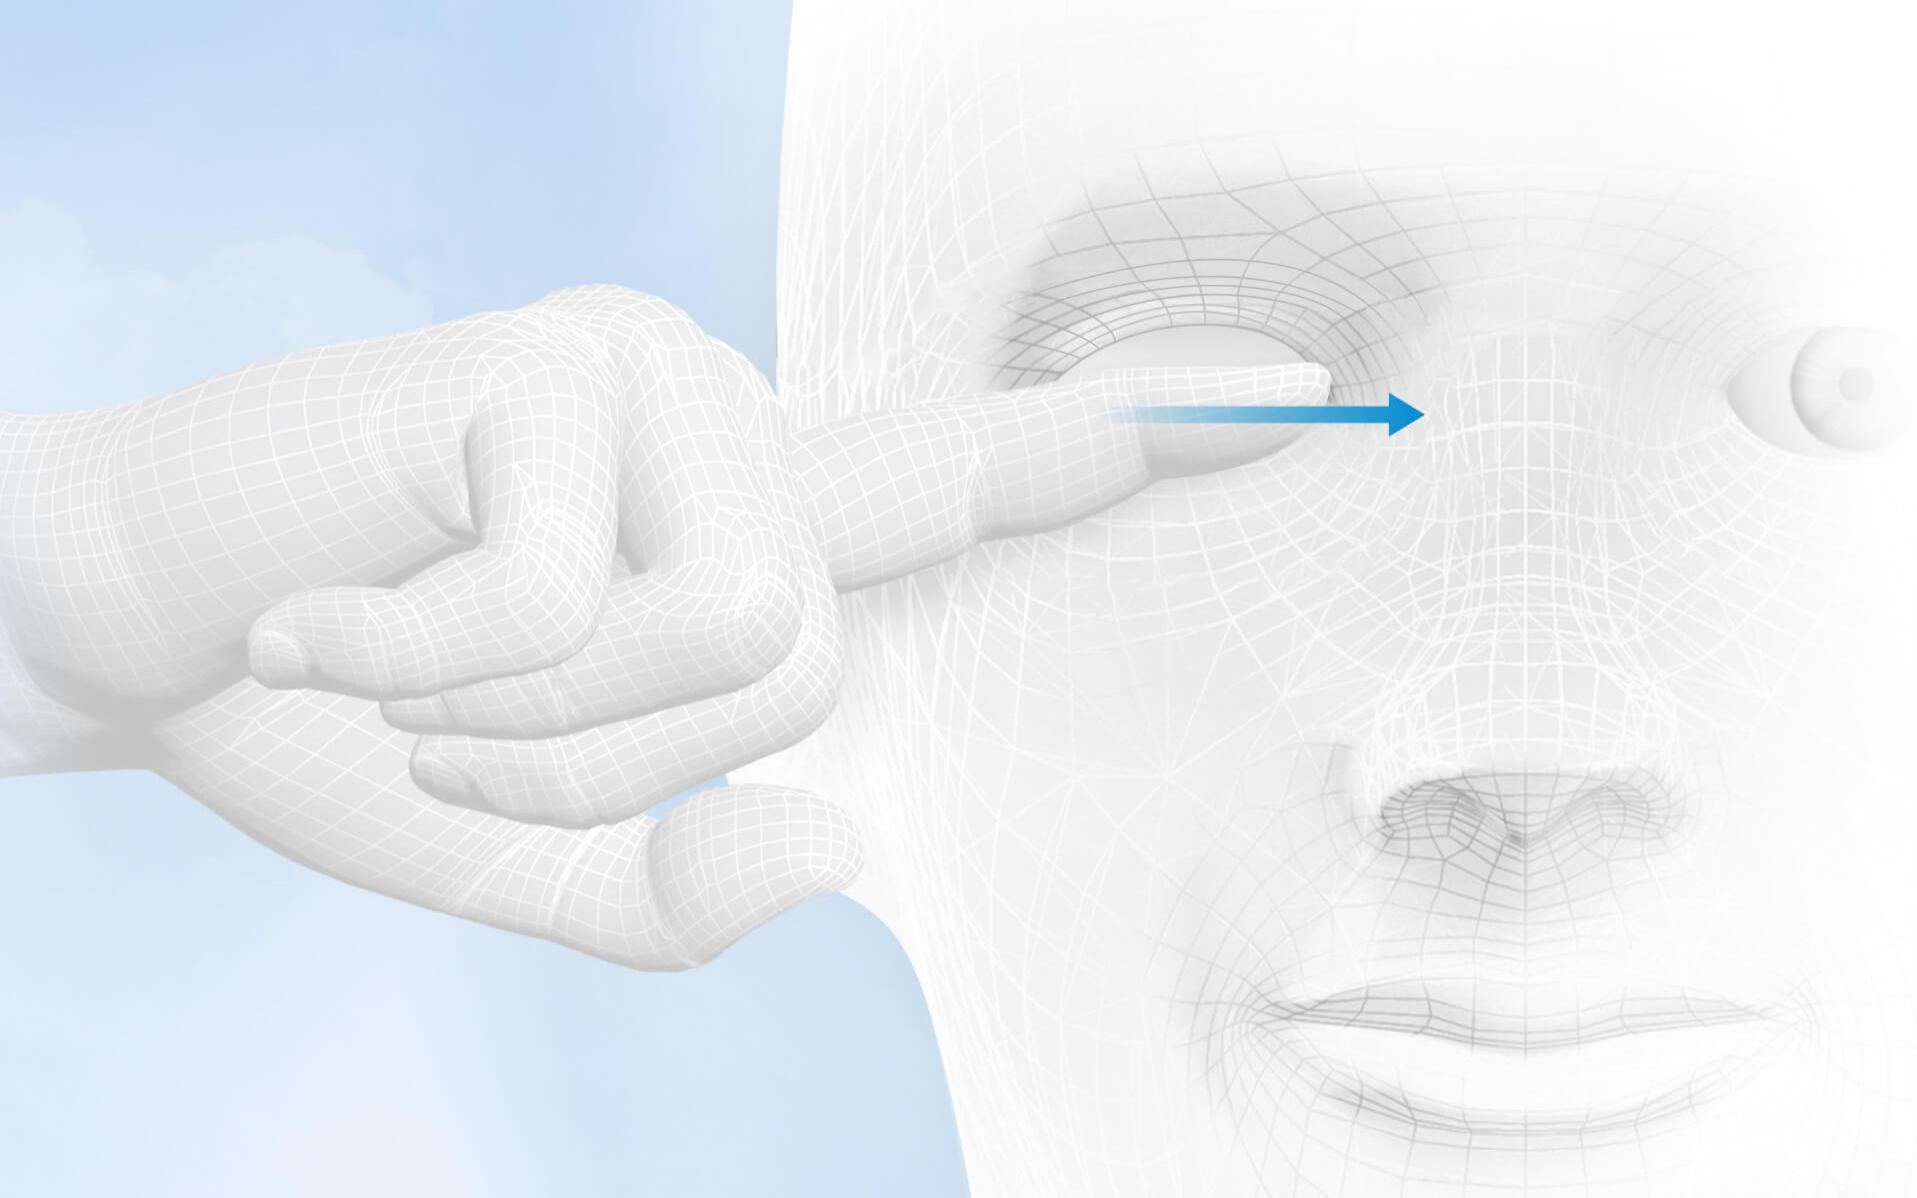 Etter massasjen, med øynene fortsatt lukket, skal du forsiktig rense øyelokkene fra utsiden og inn med en bomullspad dyppet i en øyerensevæske.